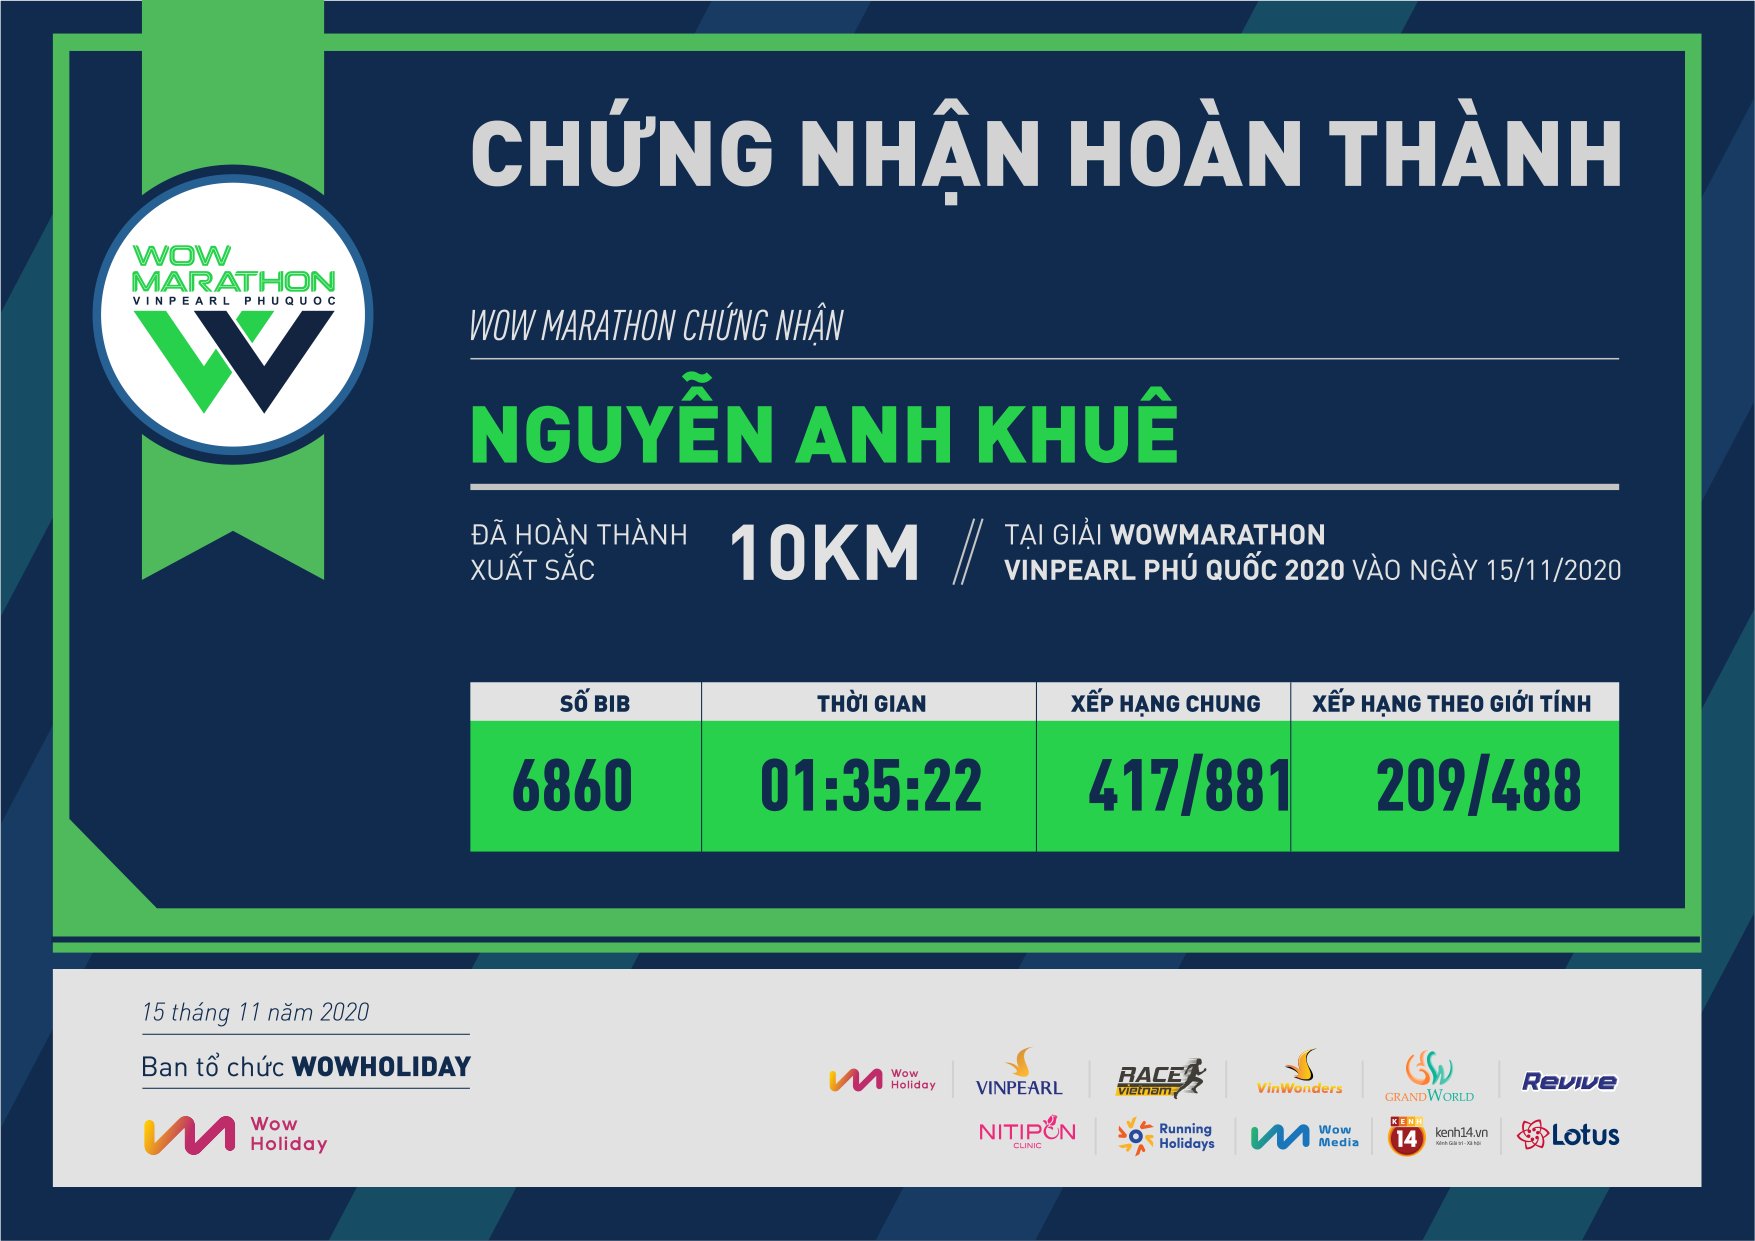 6860 - Nguyễn Anh Khuê